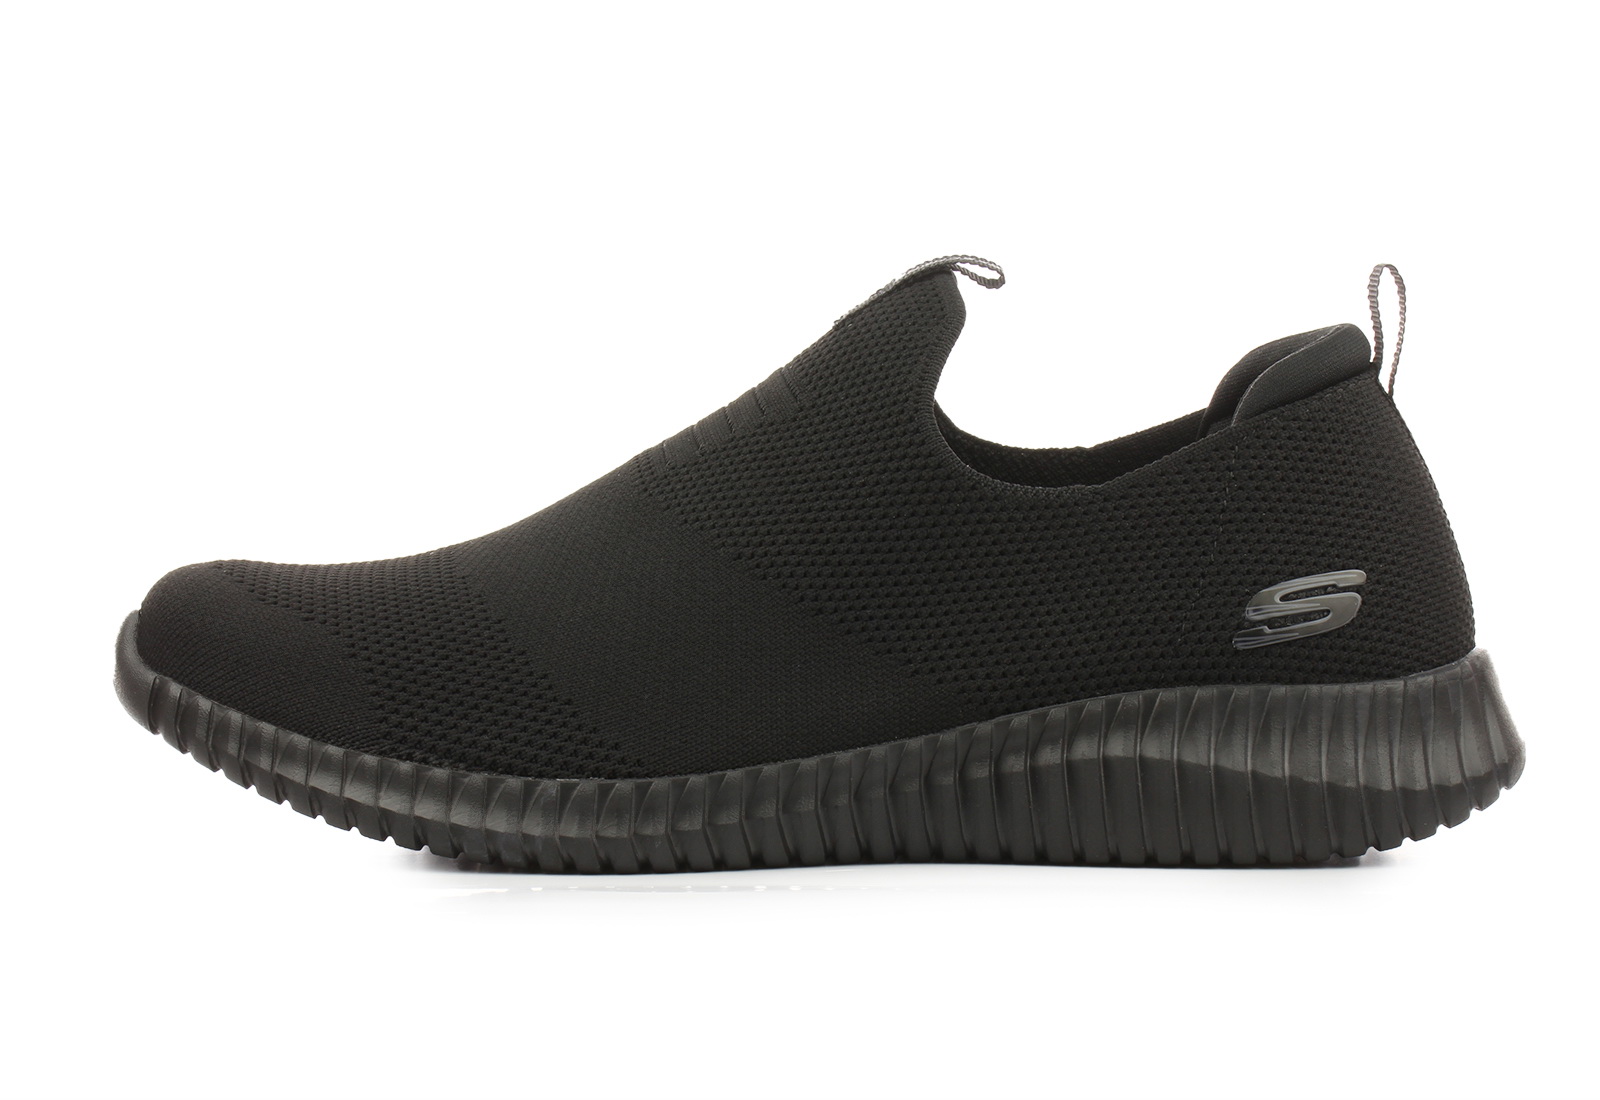 Skechers Slip-ons - Elite Flex- Wasik - 52649-bbk - Online shop for shoes and boots